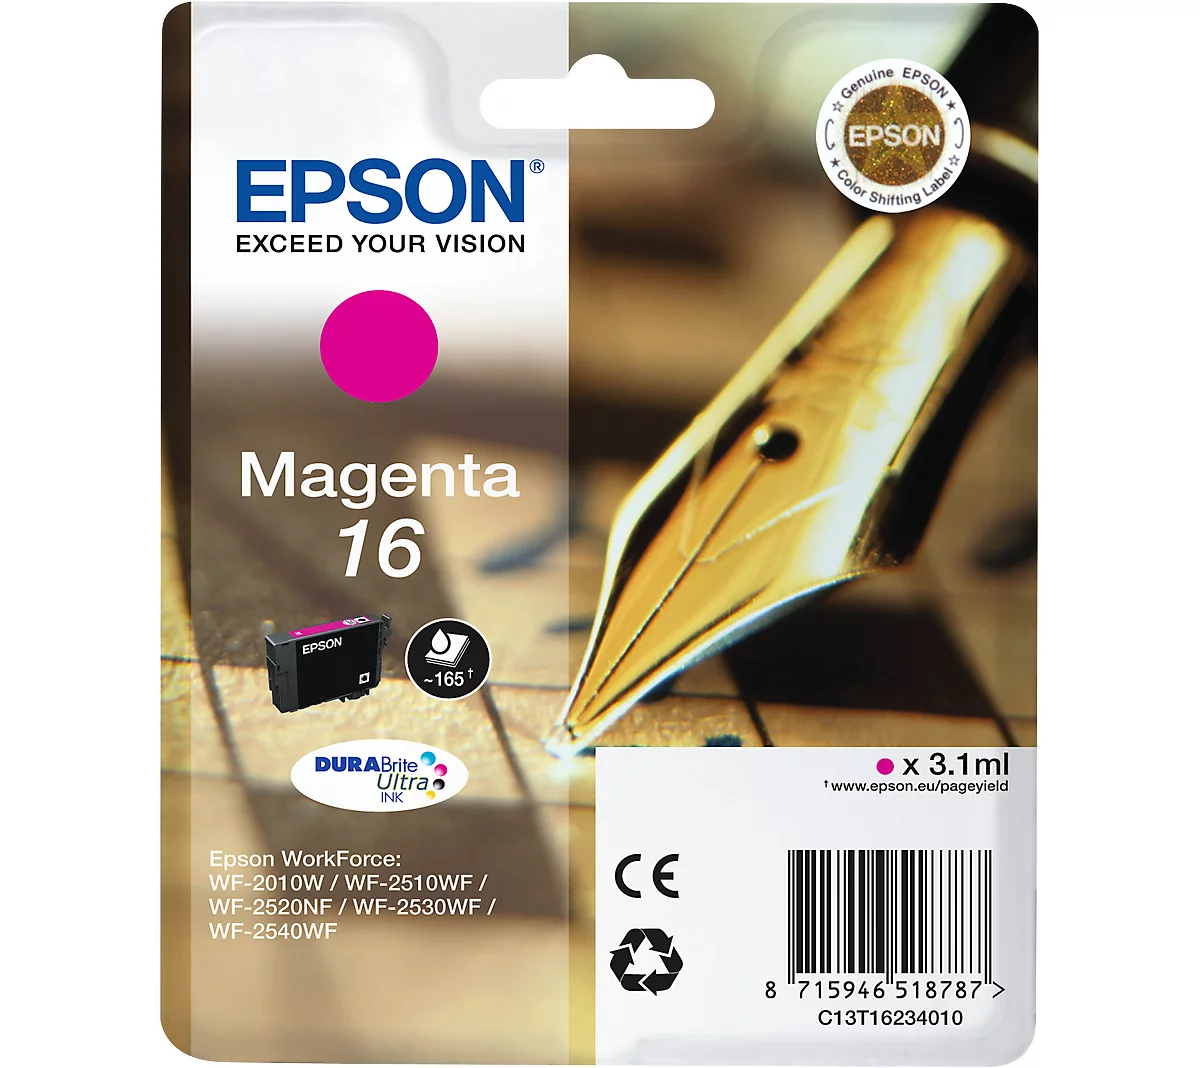 Original Epson Tintenpatrone 16, Einzelpack, magenta